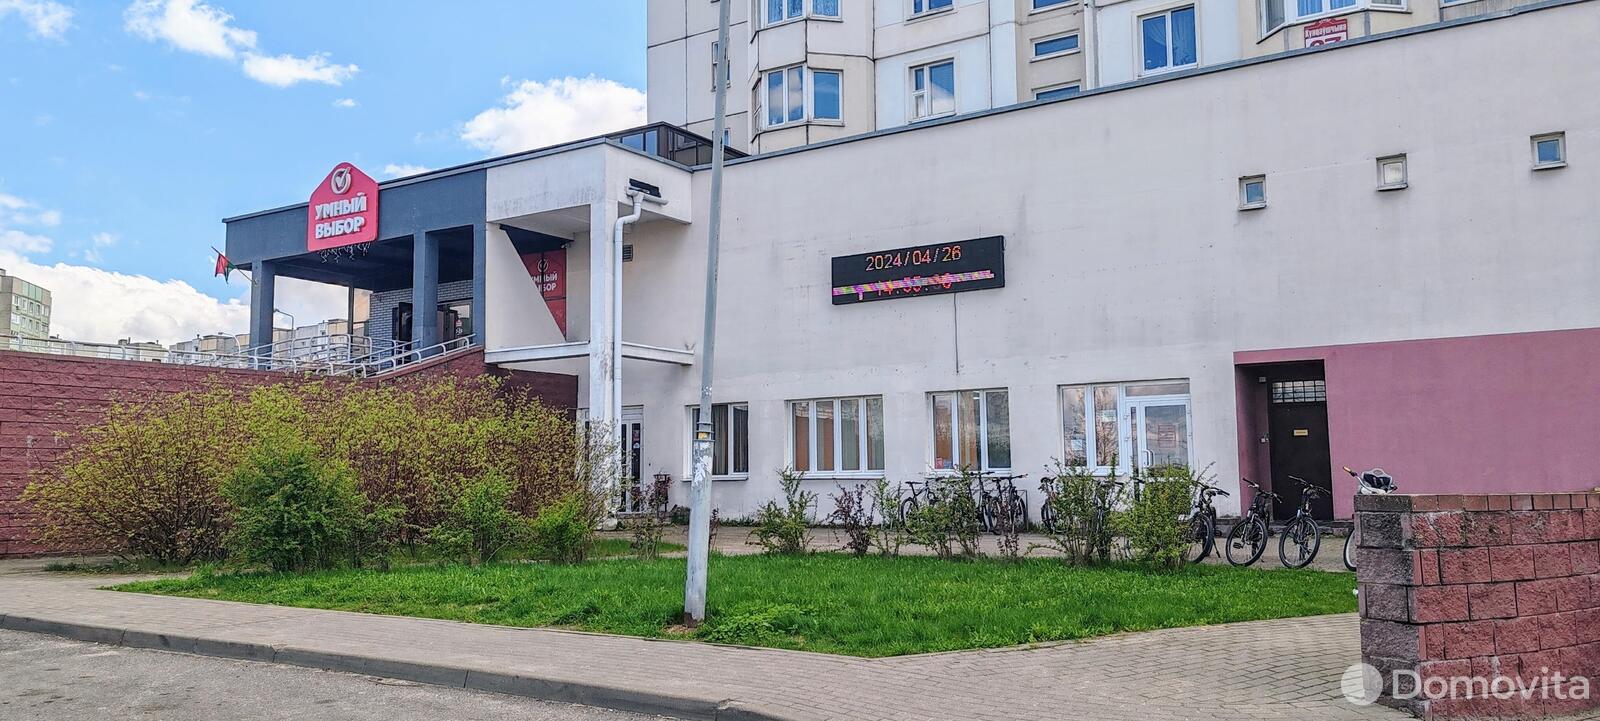 Аренда офиса на ул. Кунцевщина, д. 37 в Минске, 1526EUR, код 12079 - фото 3